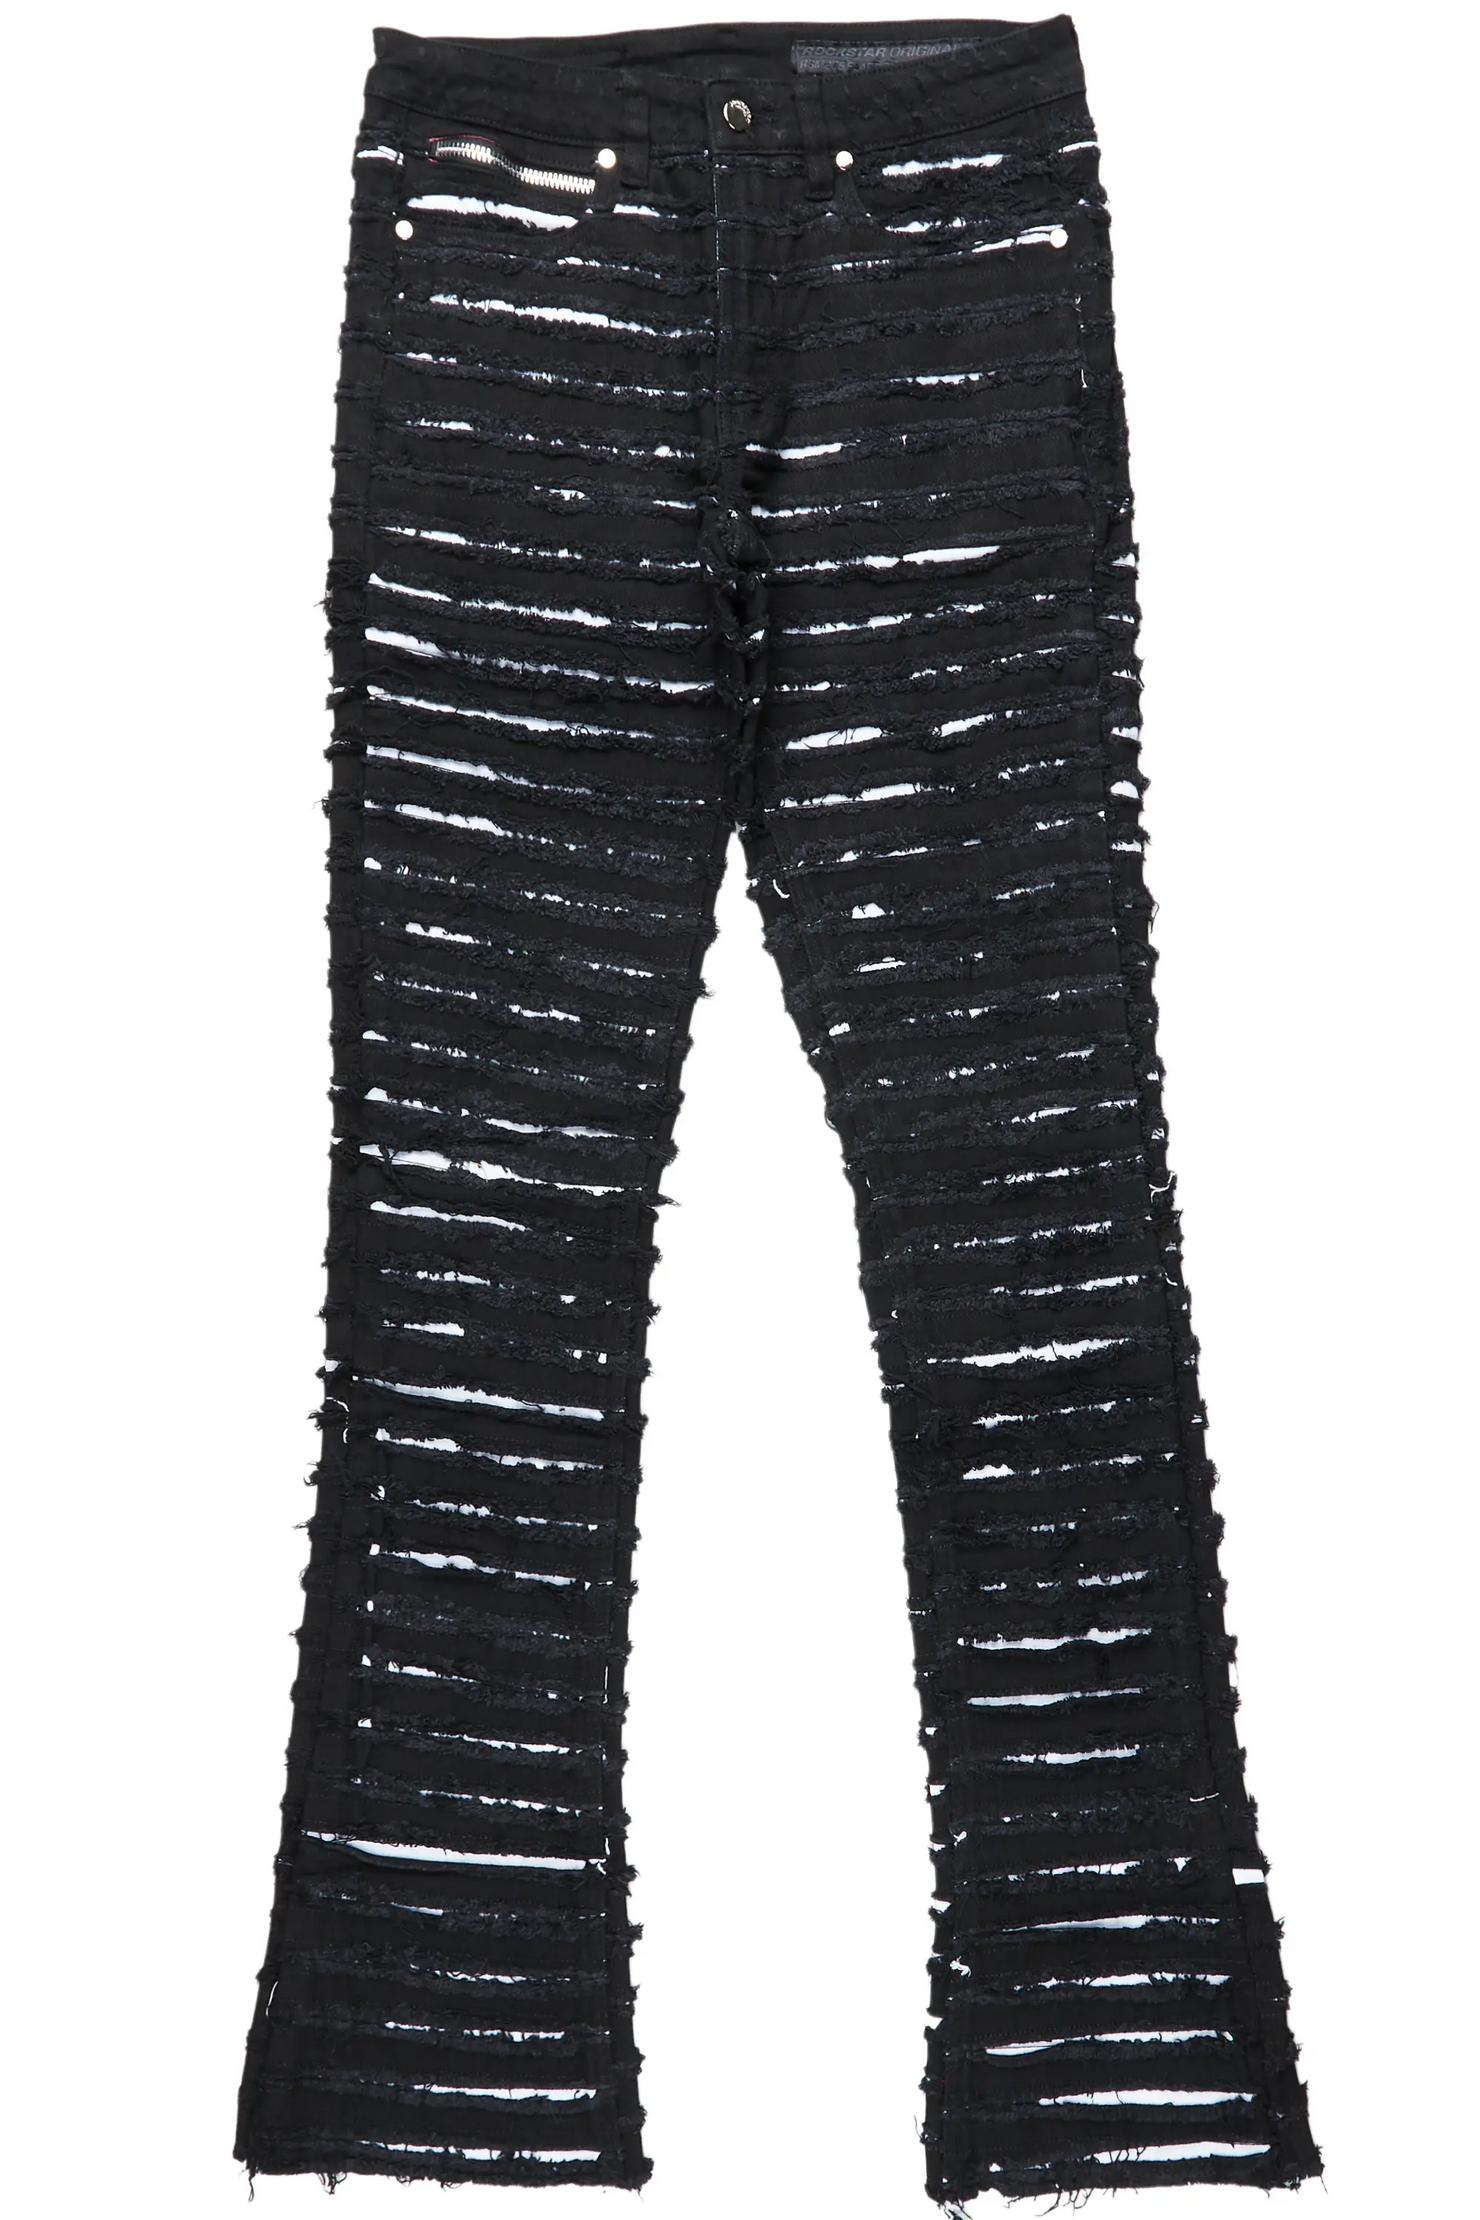 Korren White/Black Stacked Flare Jean